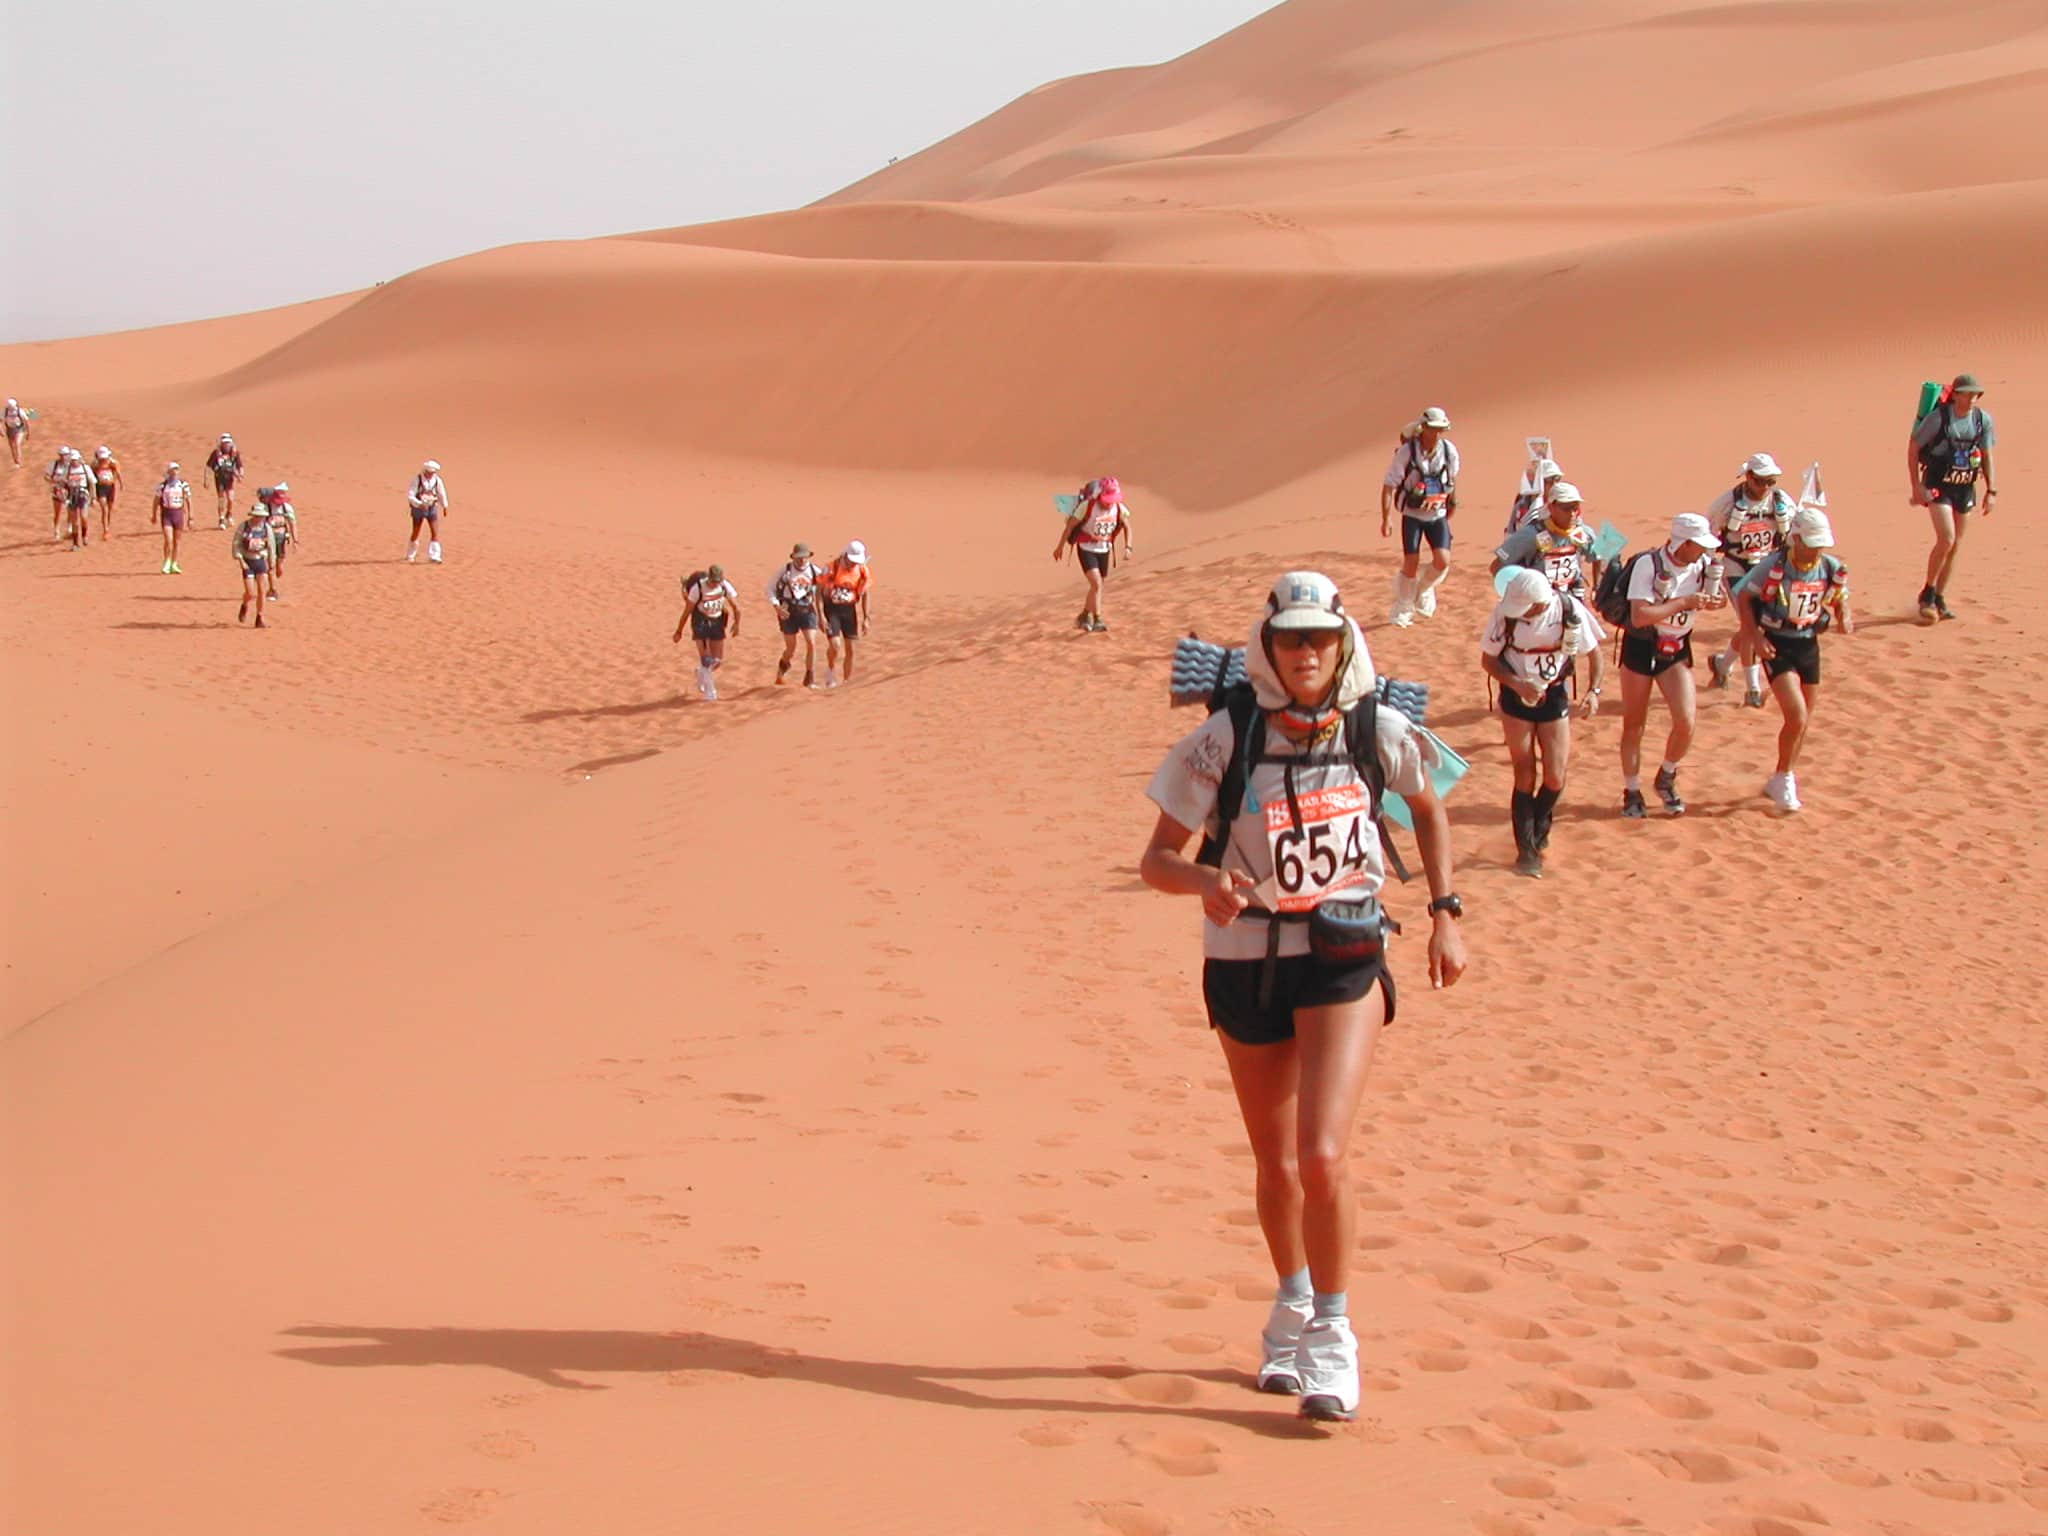 Triunfa en la Gran Carrera del Desierto con estos tips y tácticas ganadoras